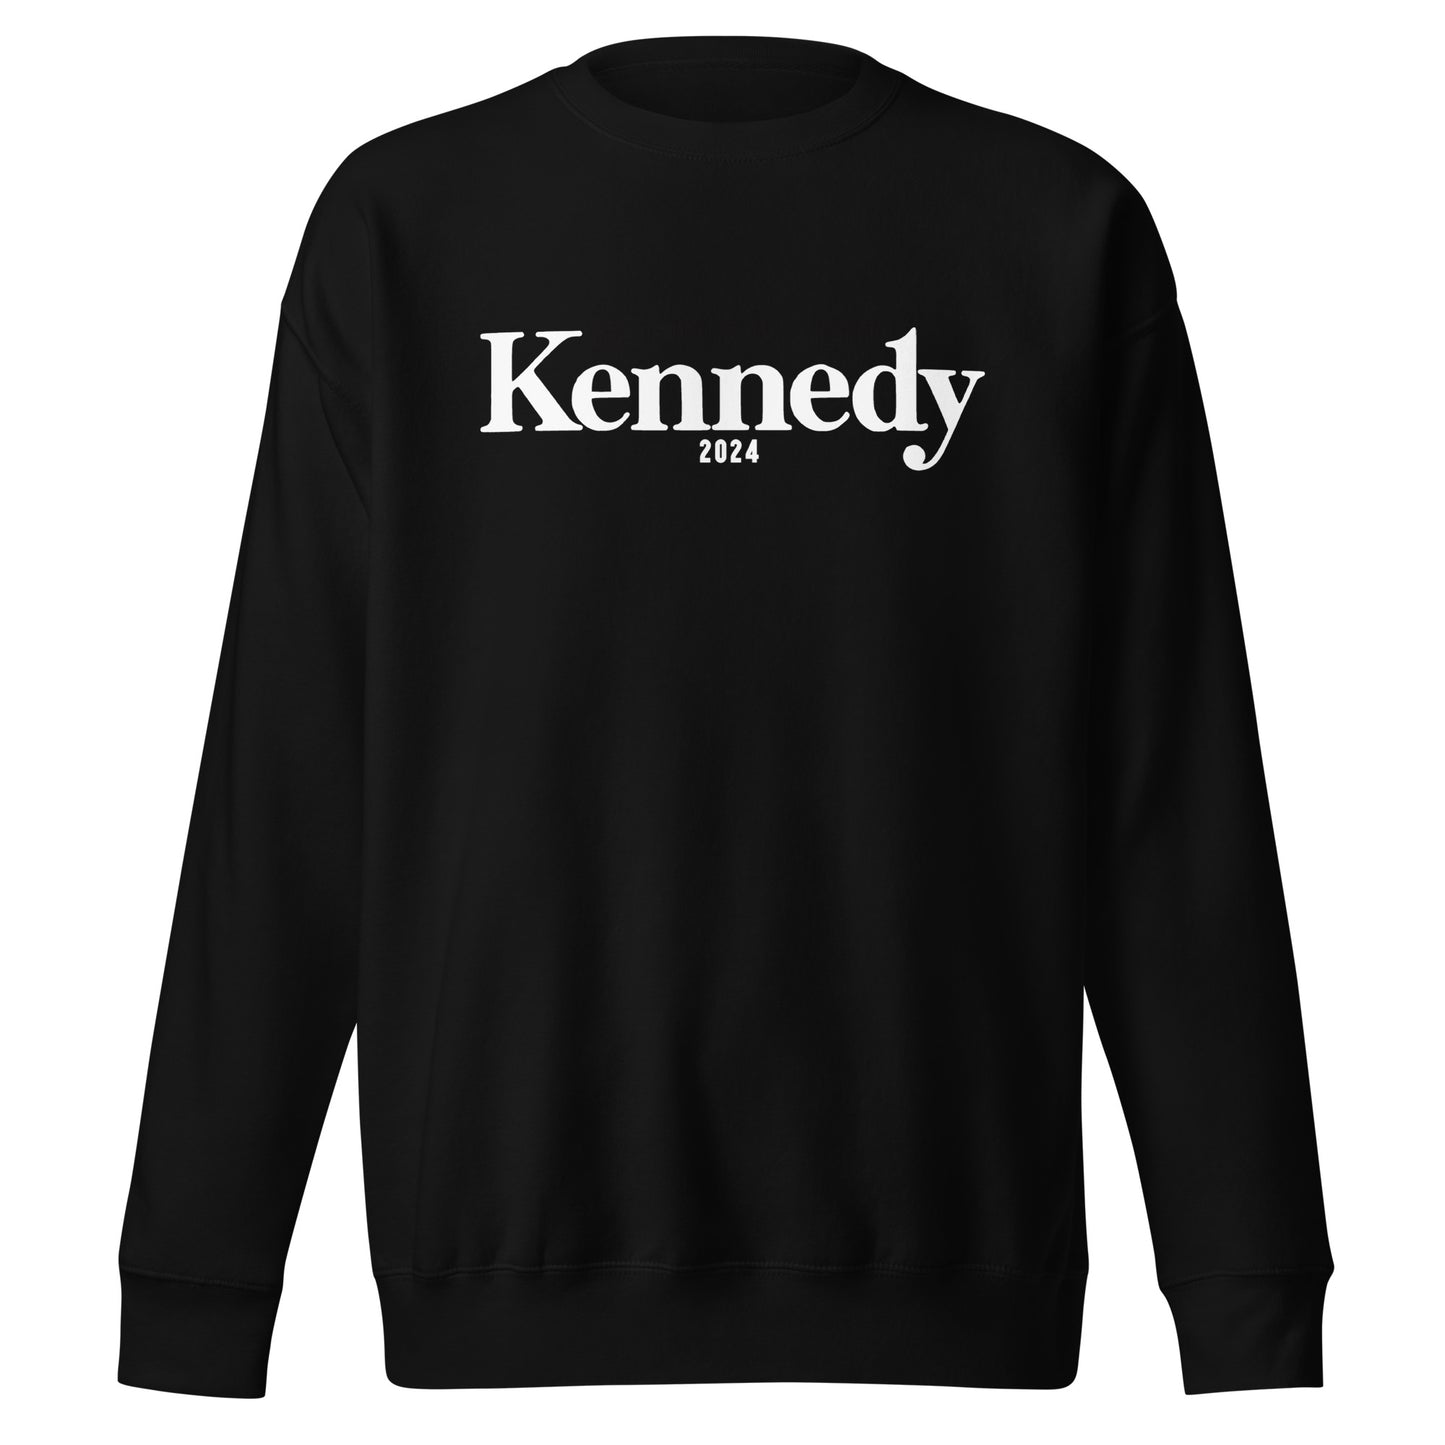 Kennedy 2024 Unisex Premium Sweatshirt